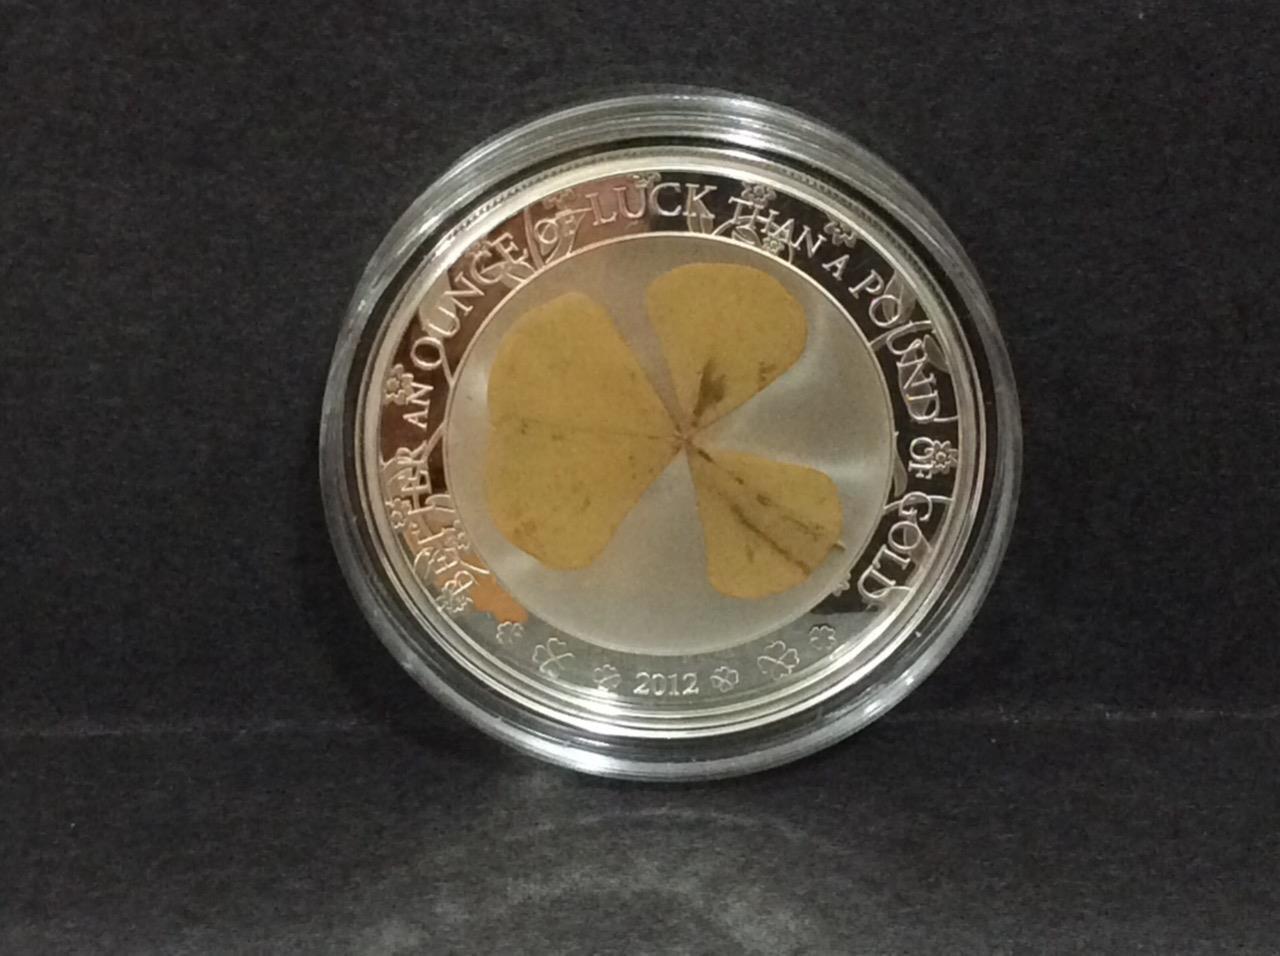 Palau 5 Dollars, 2014 Four Leaf Clover, 1oz Silver